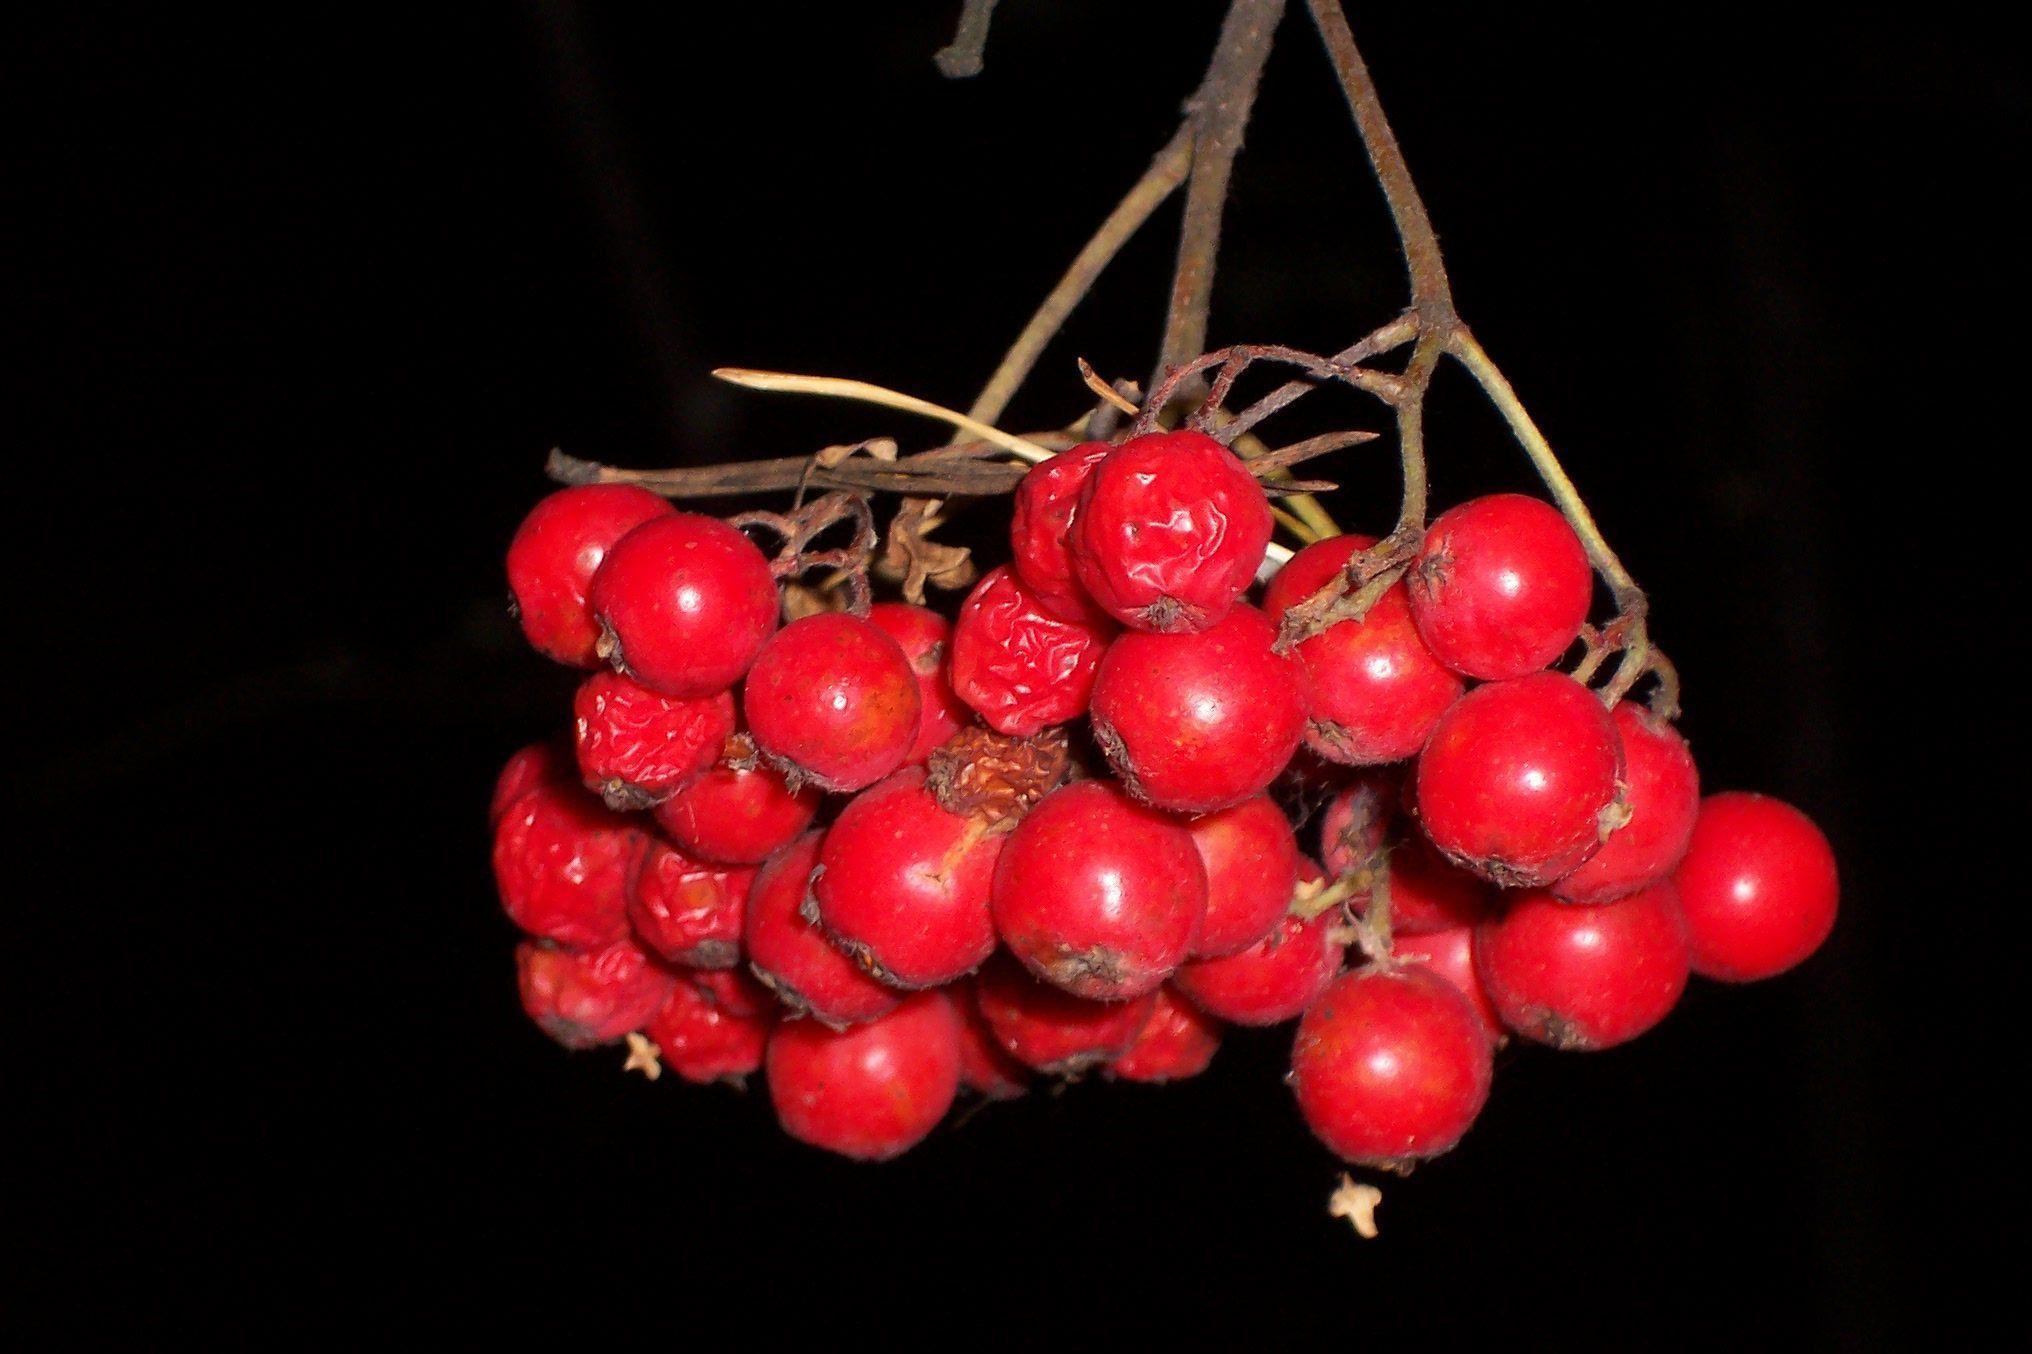 Berries of rowan on black